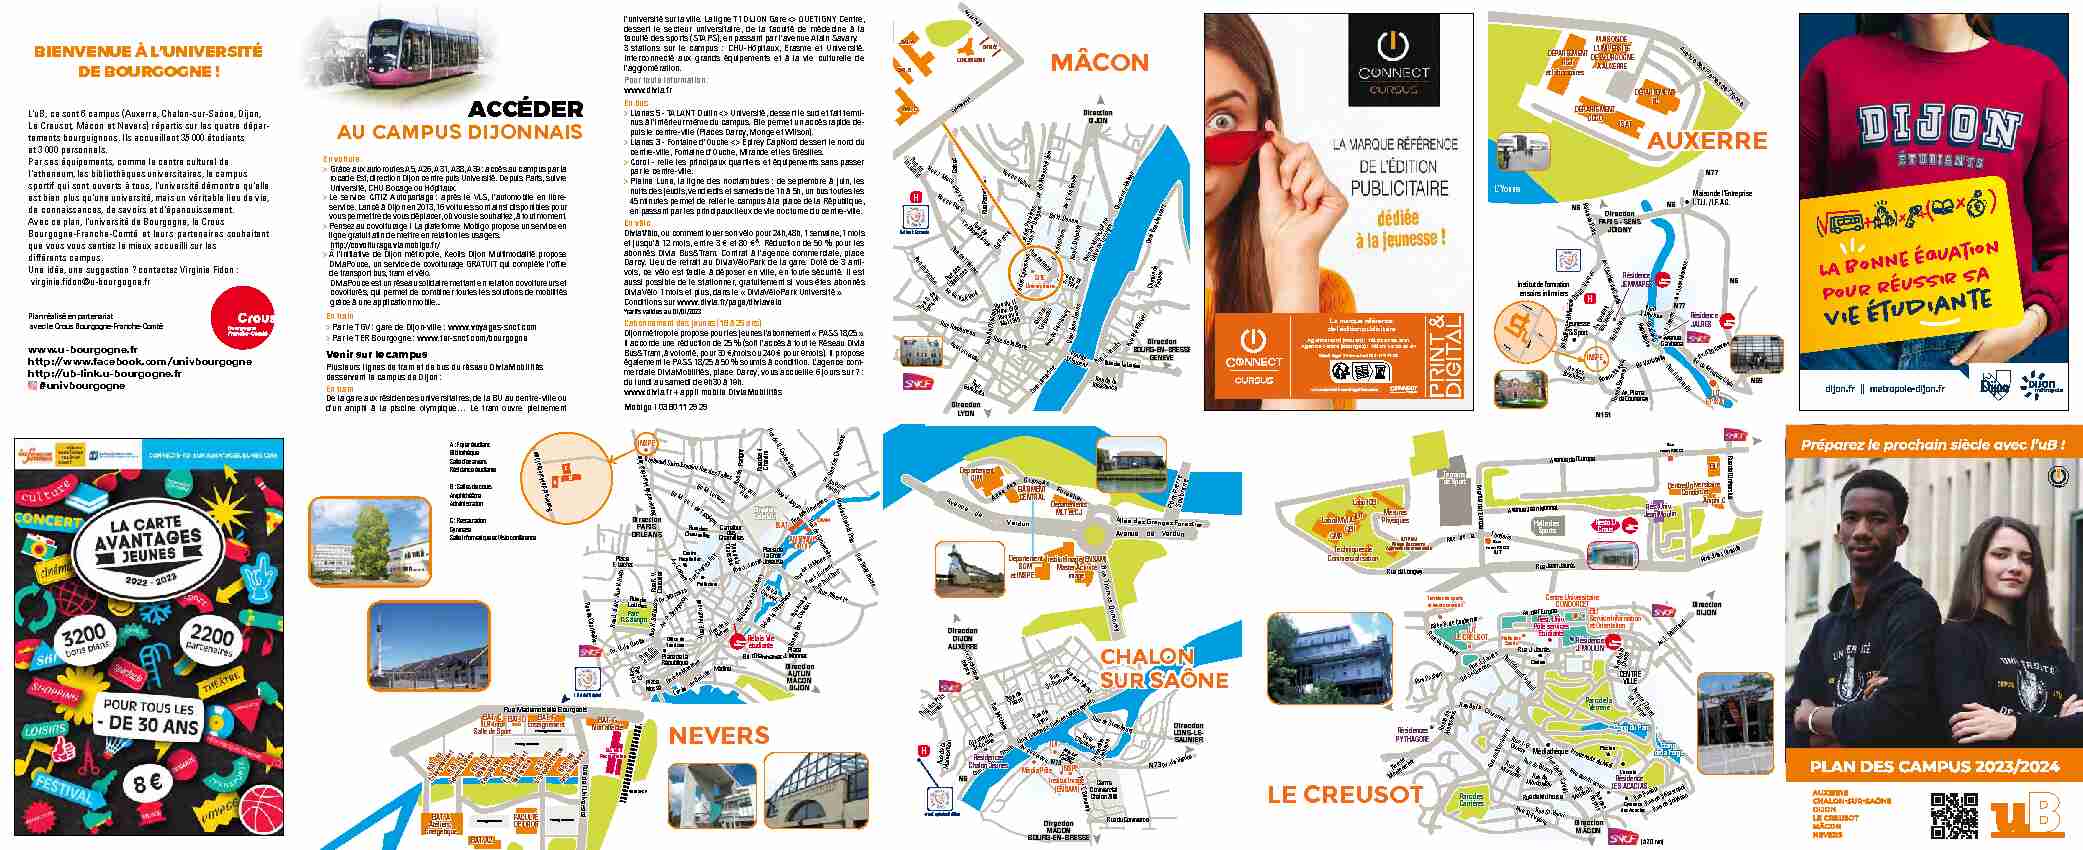 [PDF] Plan du Campus - Université de Bourgogne